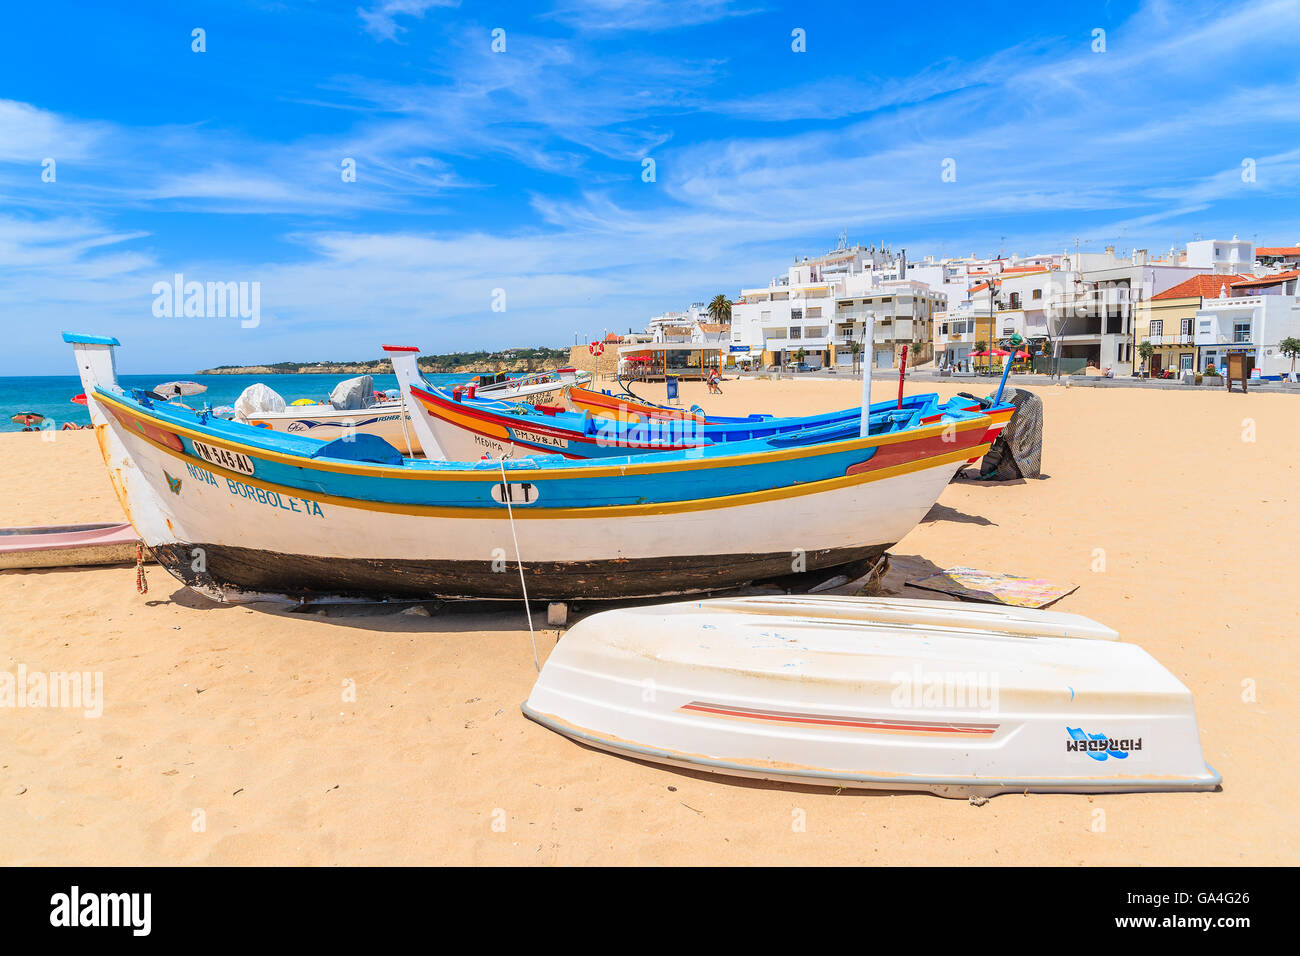 ARMACAO DE PERA, PORTUGAL - 17 MAI 2015 : bateaux de pêche colorés typiques sur la plage à Armacao de Pera ville côtière. Région de l'Algarve est une destination de vacances populaire au Portugal. Banque D'Images